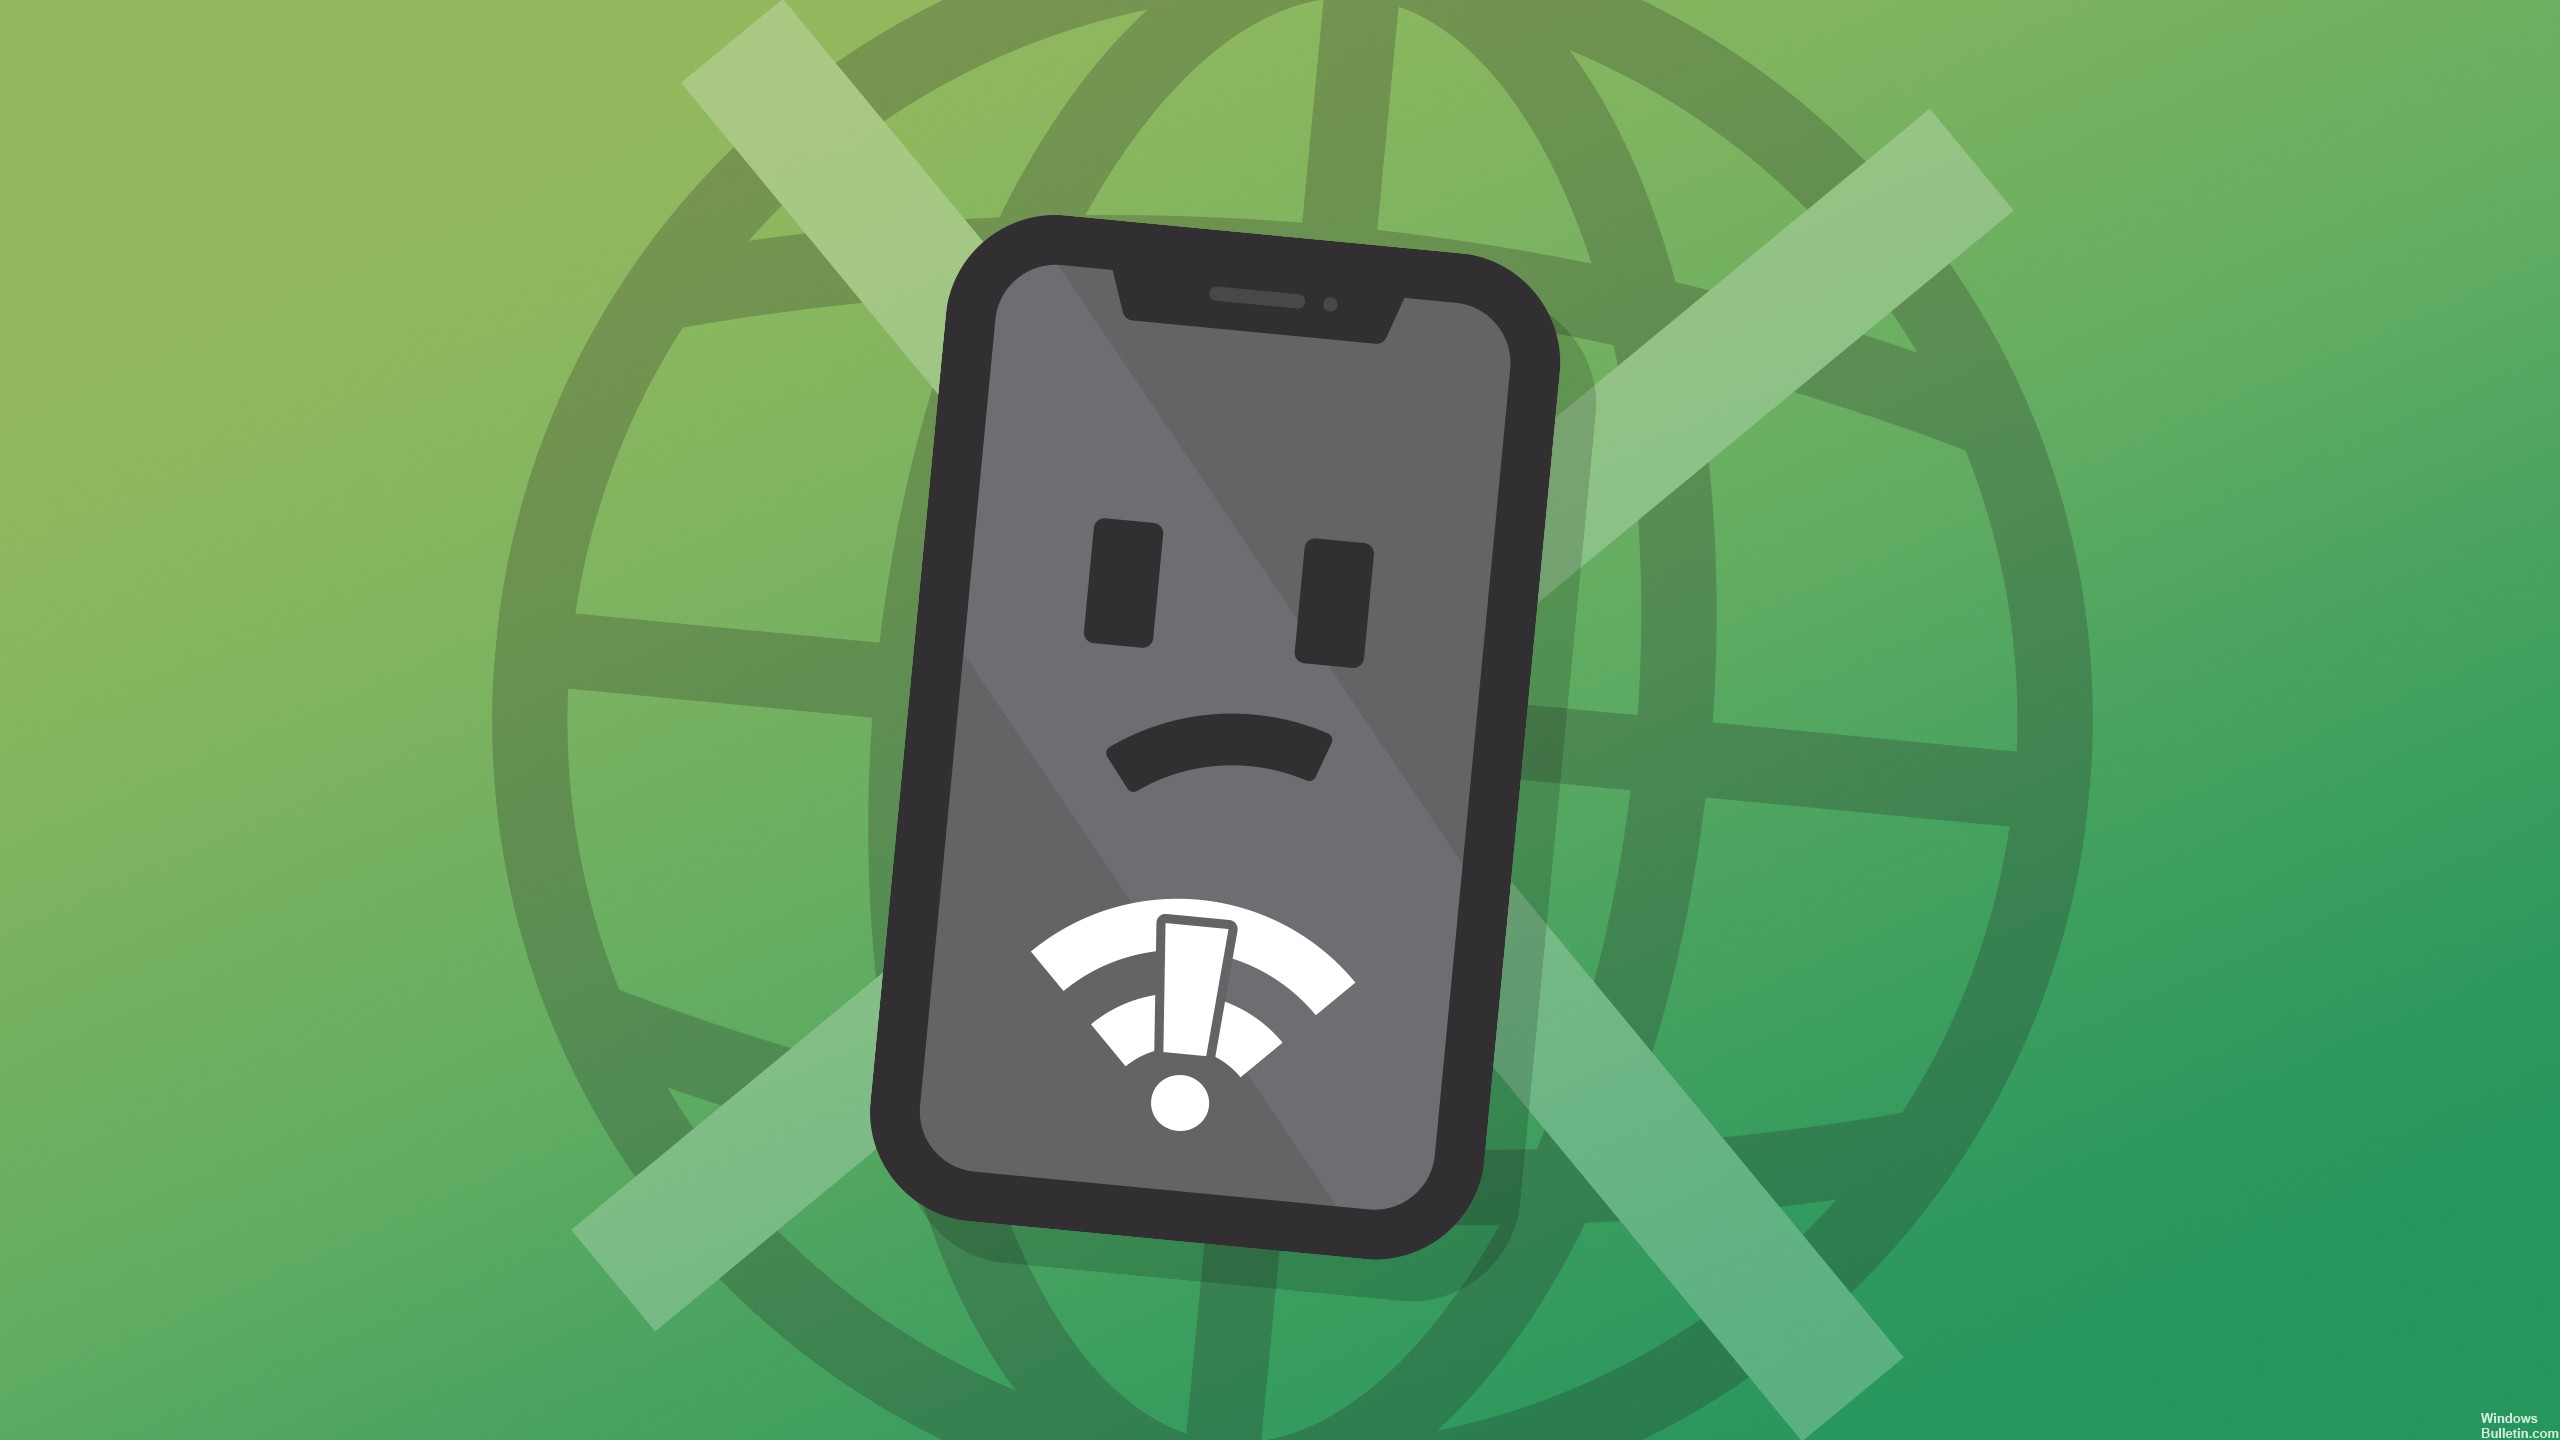 Wat veroorzaakt de fout 'Internet is mogelijk niet beschikbaar' op Android-apparaten